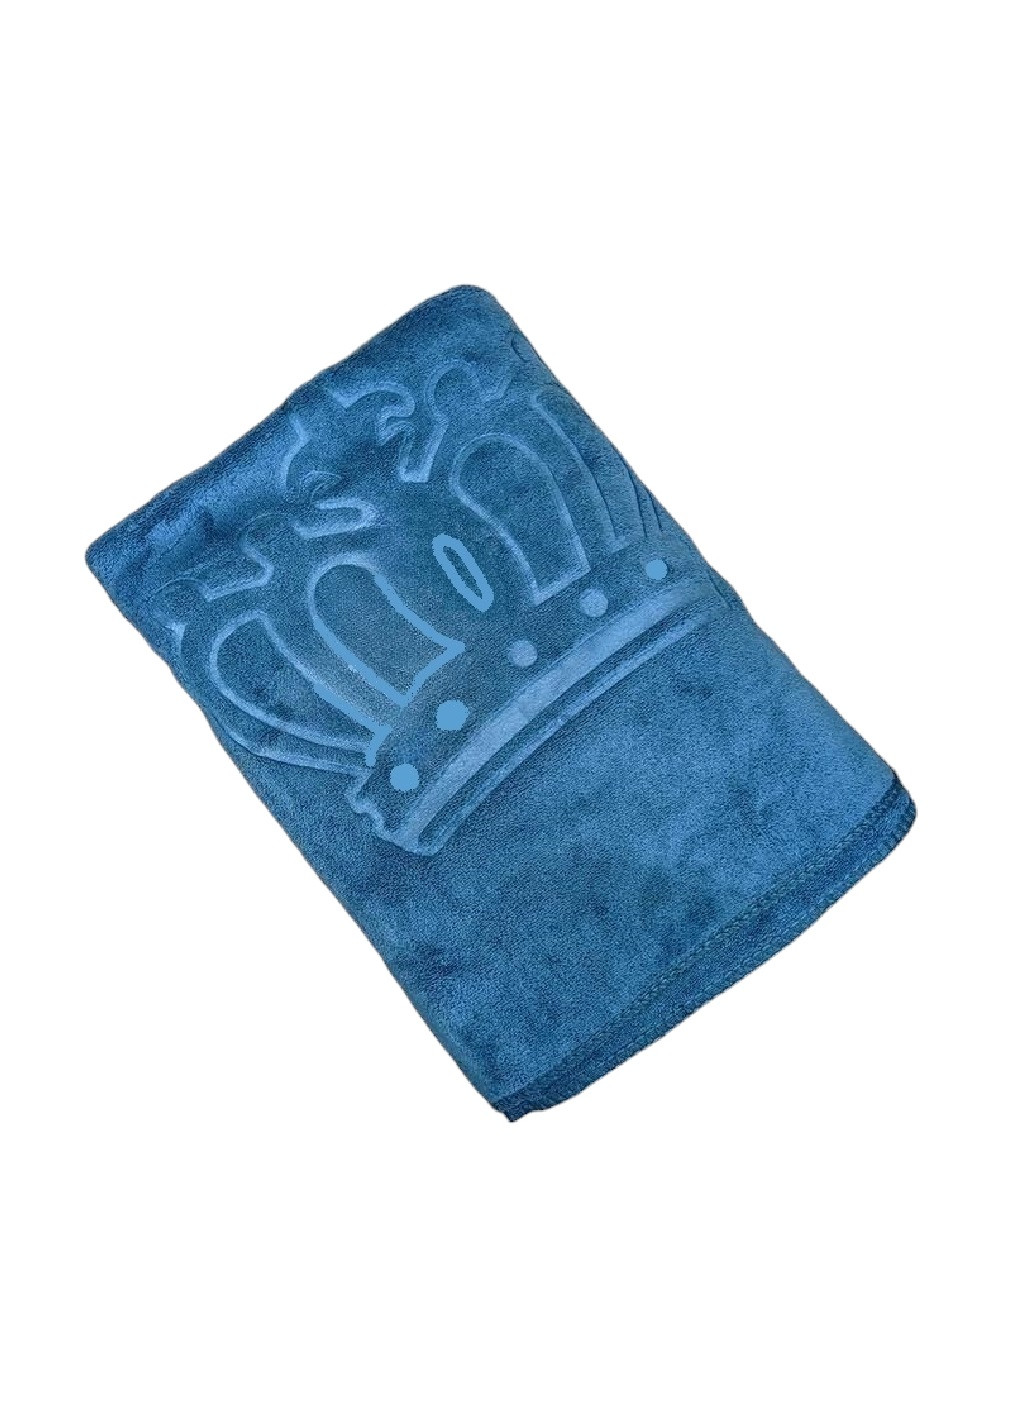 Unbranded полотенце микрофибра велюр для ванны бани сауны пляжа быстросохнущее с узором 170х90 см (476117-prob) корона голубое однотонный голубой производство -